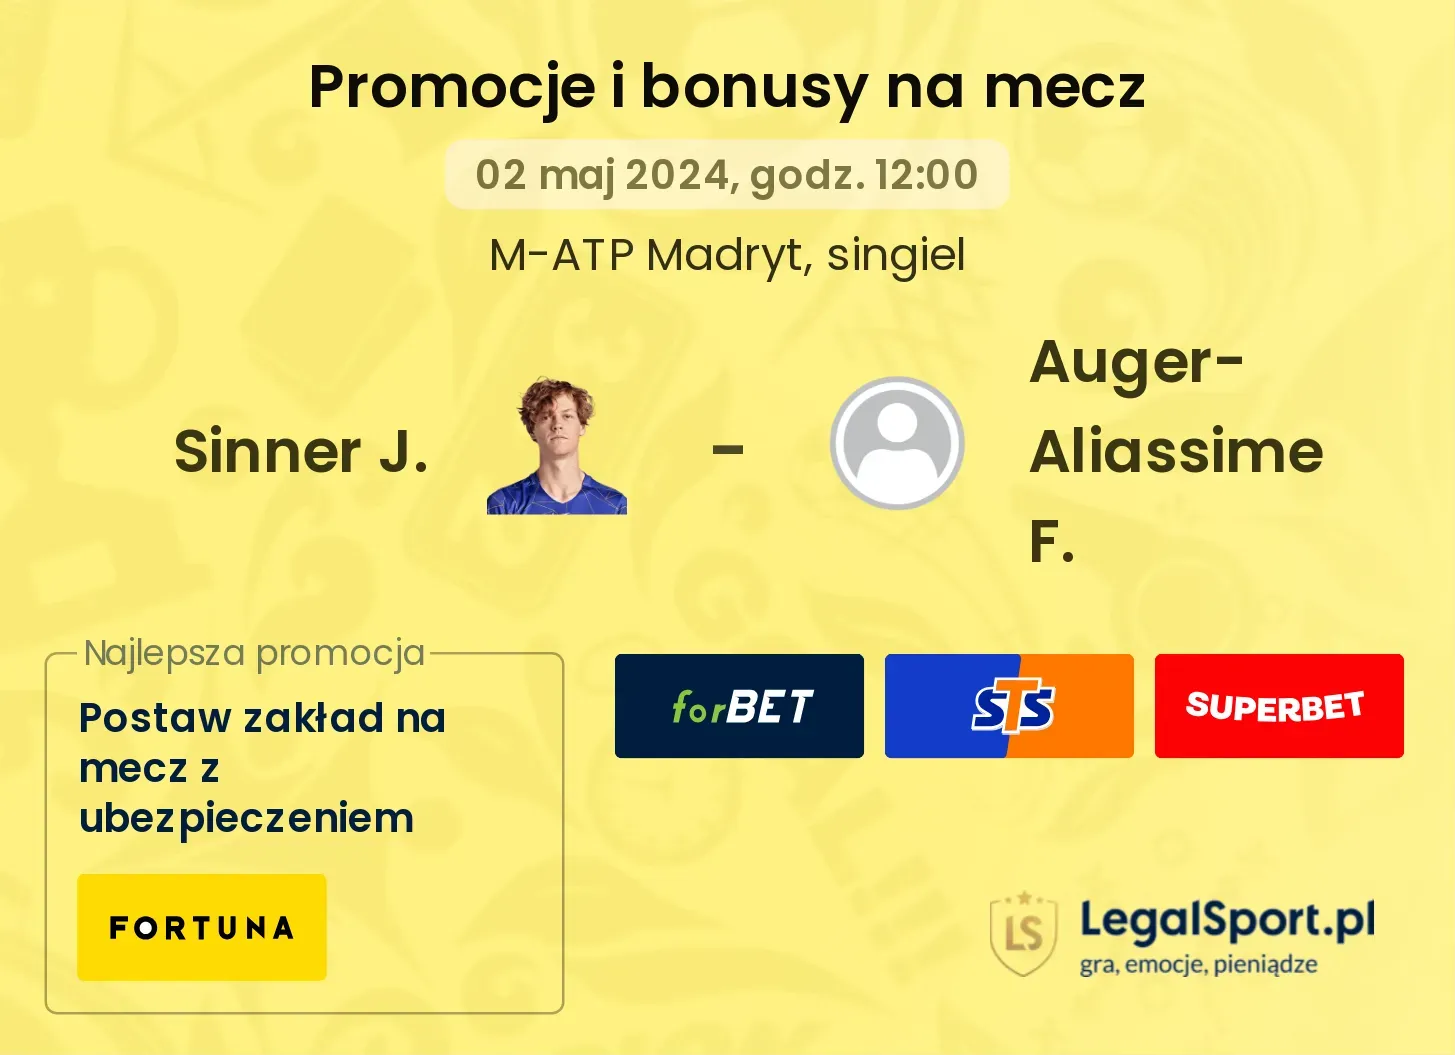 Sinner J. - Auger-Aliassime F. promocje bonusy na mecz